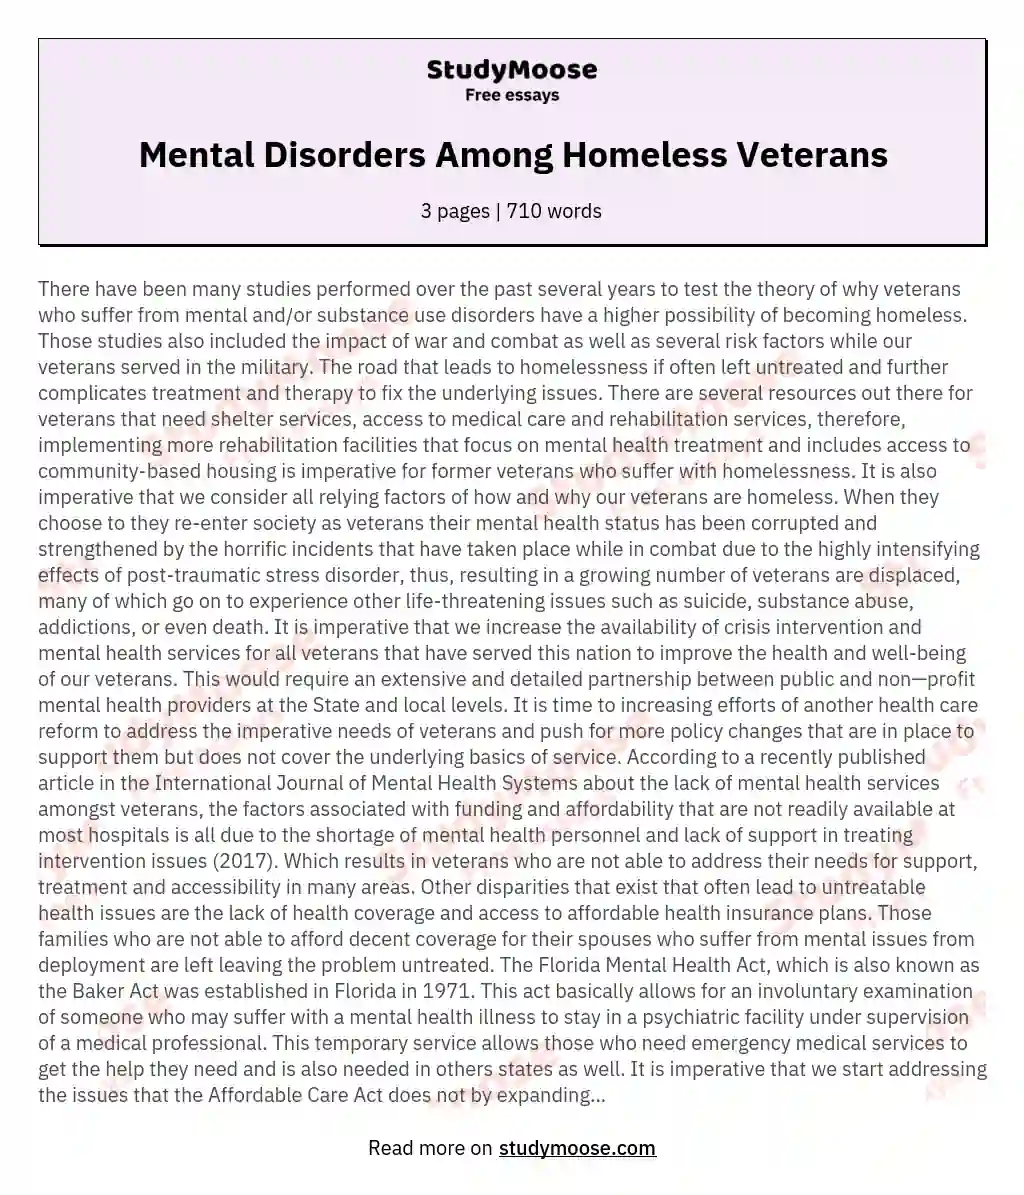 Mental Disorders Among Homeless Veterans essay